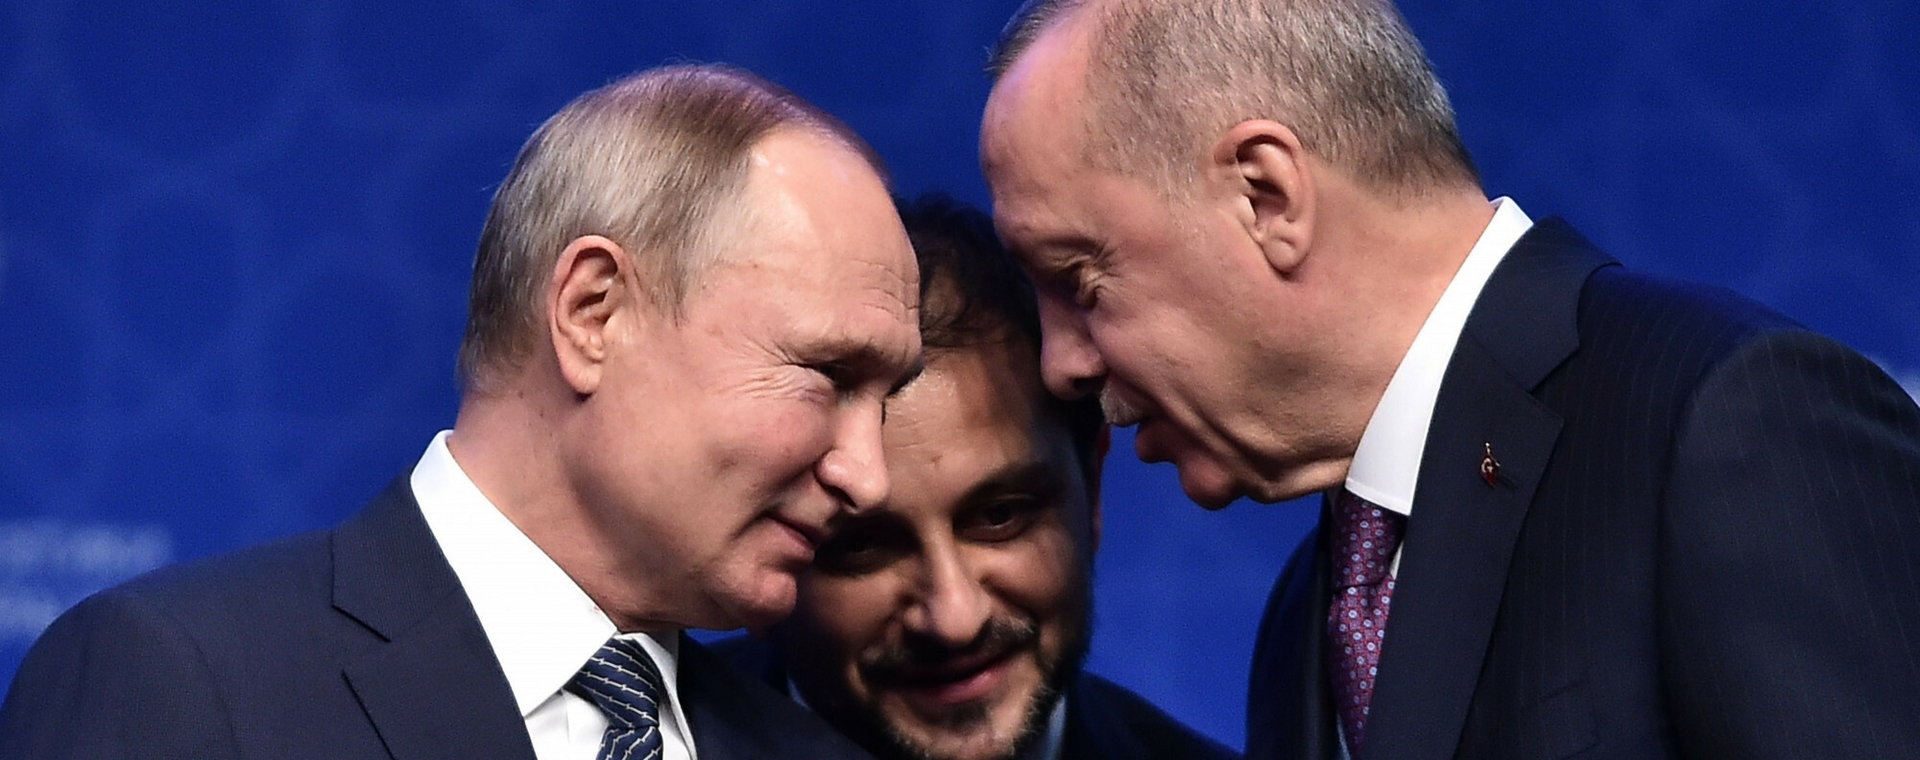 Putin oświadczył, że Rosja może wysyłać gaz ziemny do Europy przez Turcję, czyniąc z niej hub gazowy.